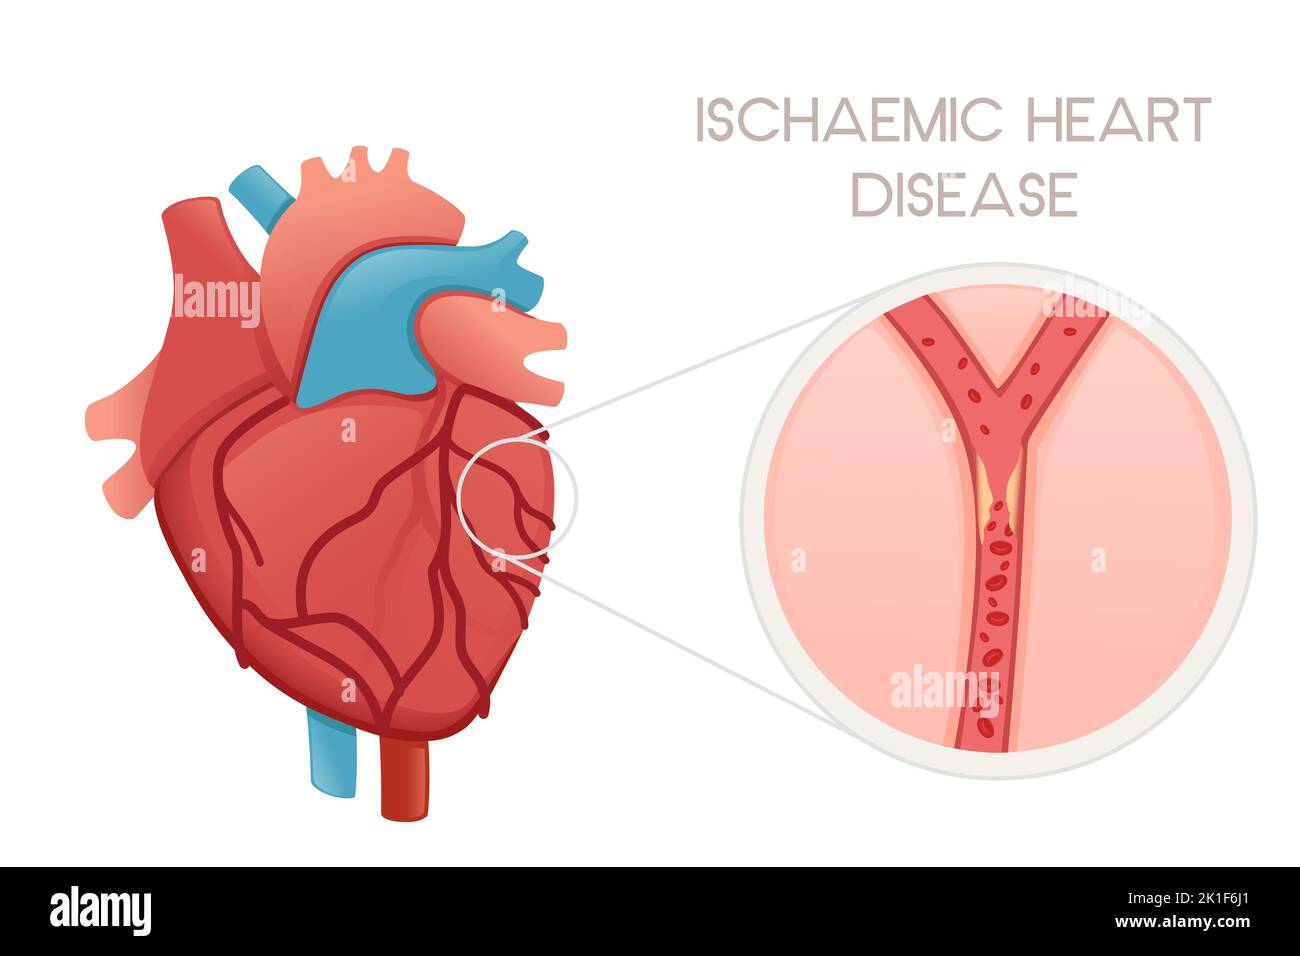 Coeur humain malsain avec la maladie ischémique illustration de l'anatomie problème de santé illustration du vecteur sur fond blanc Illustration de Vecteur